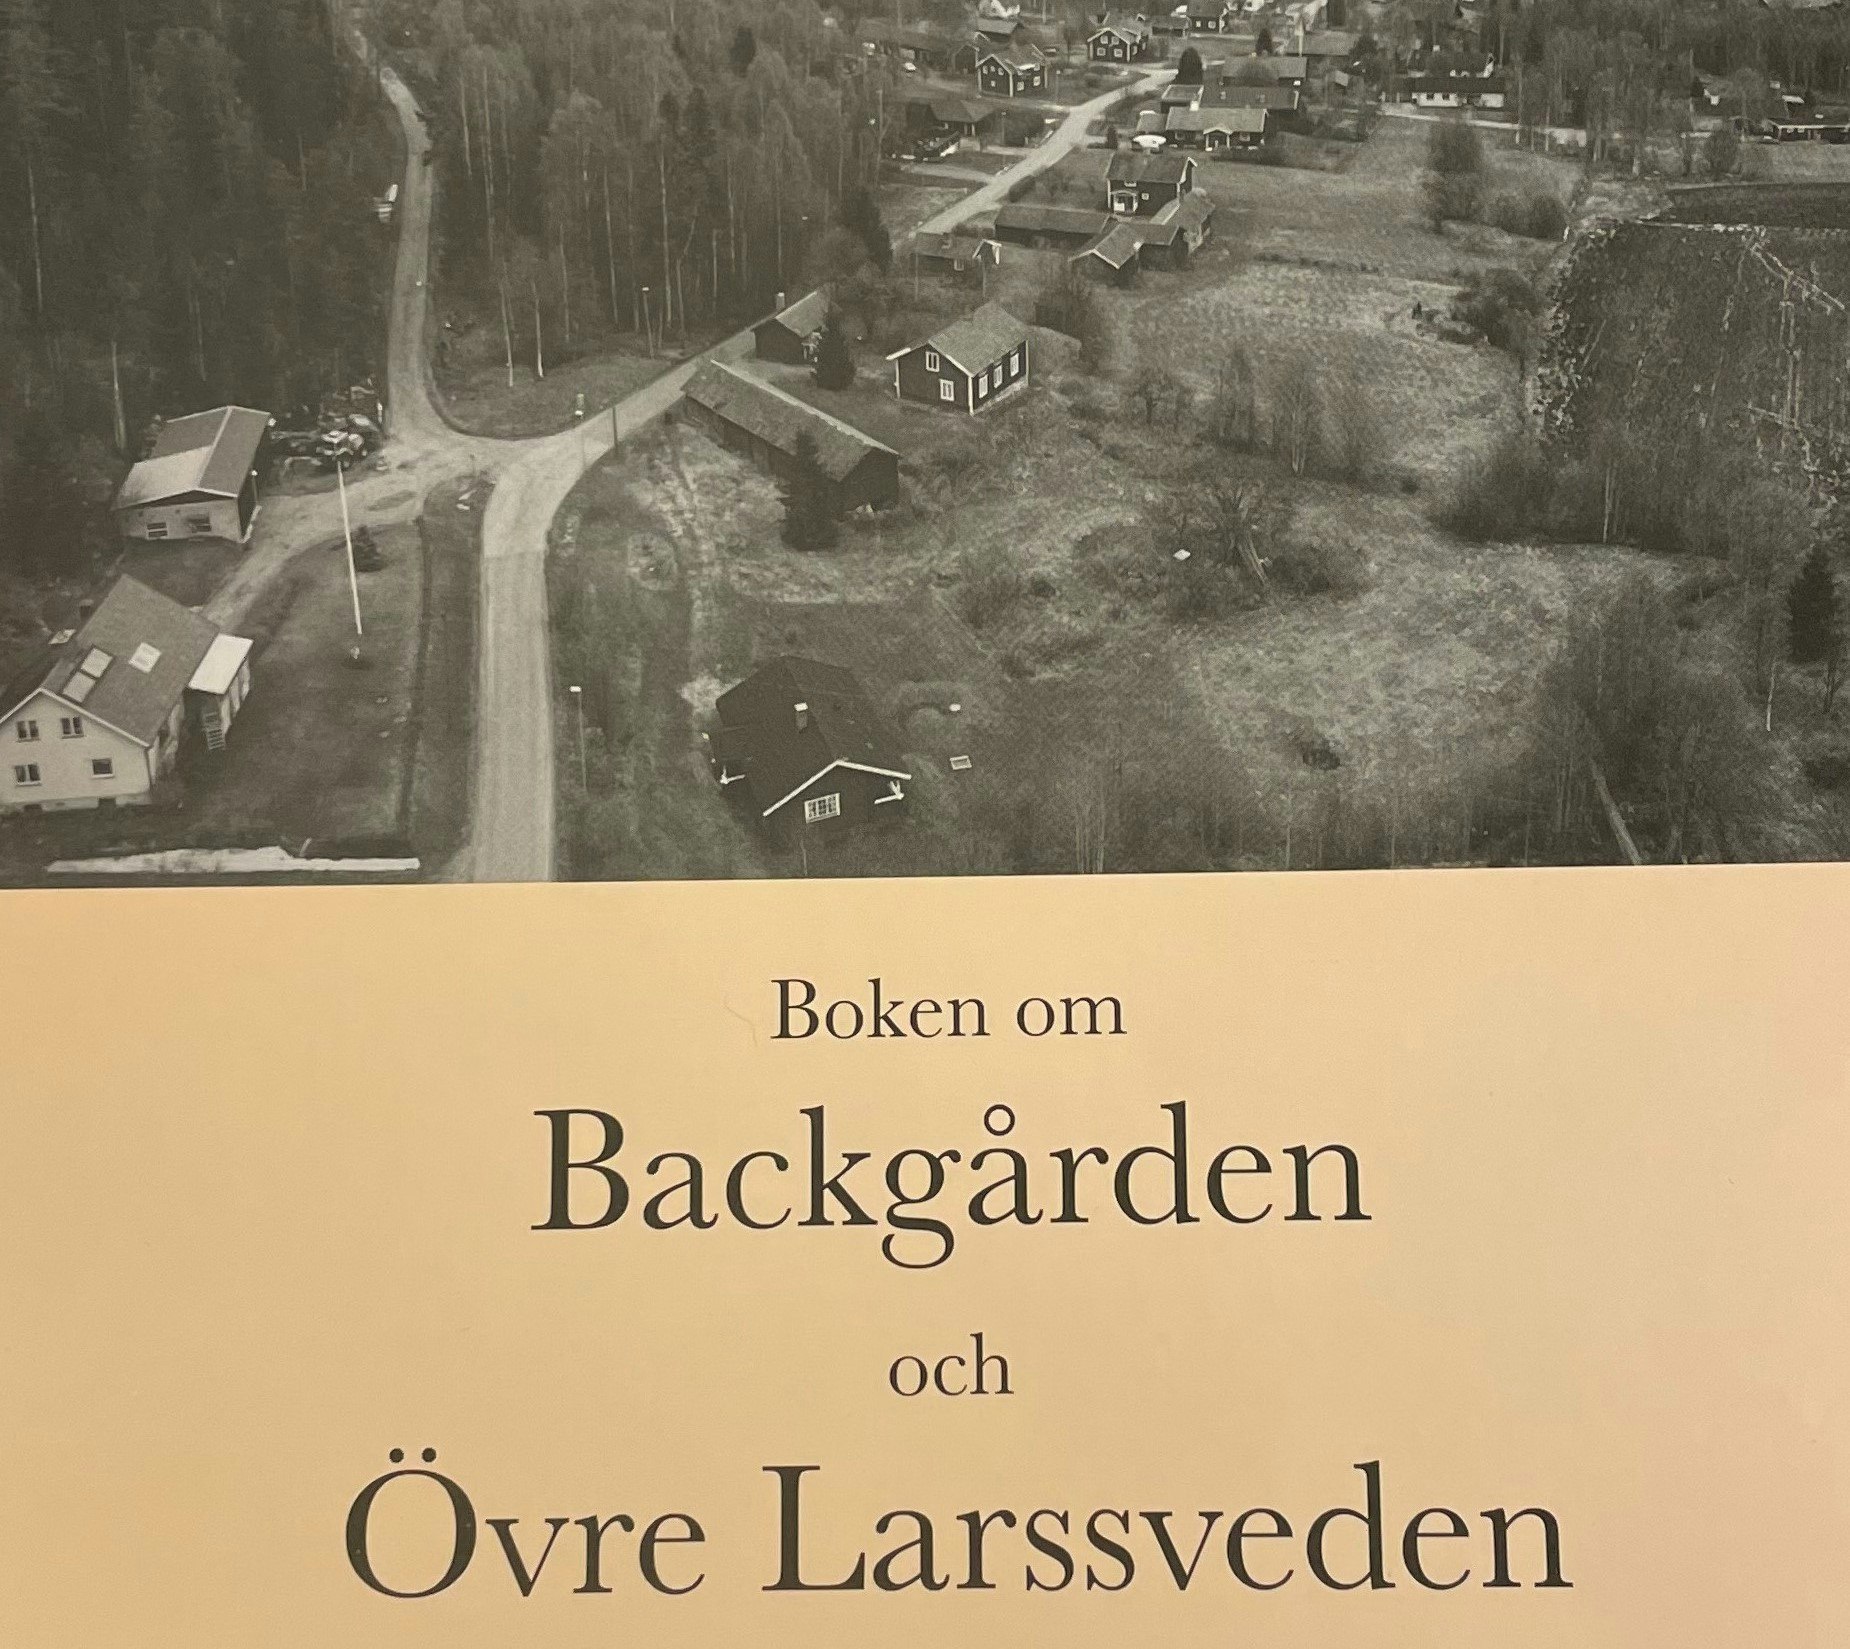 Byboken Backgården och Övre Larsveden